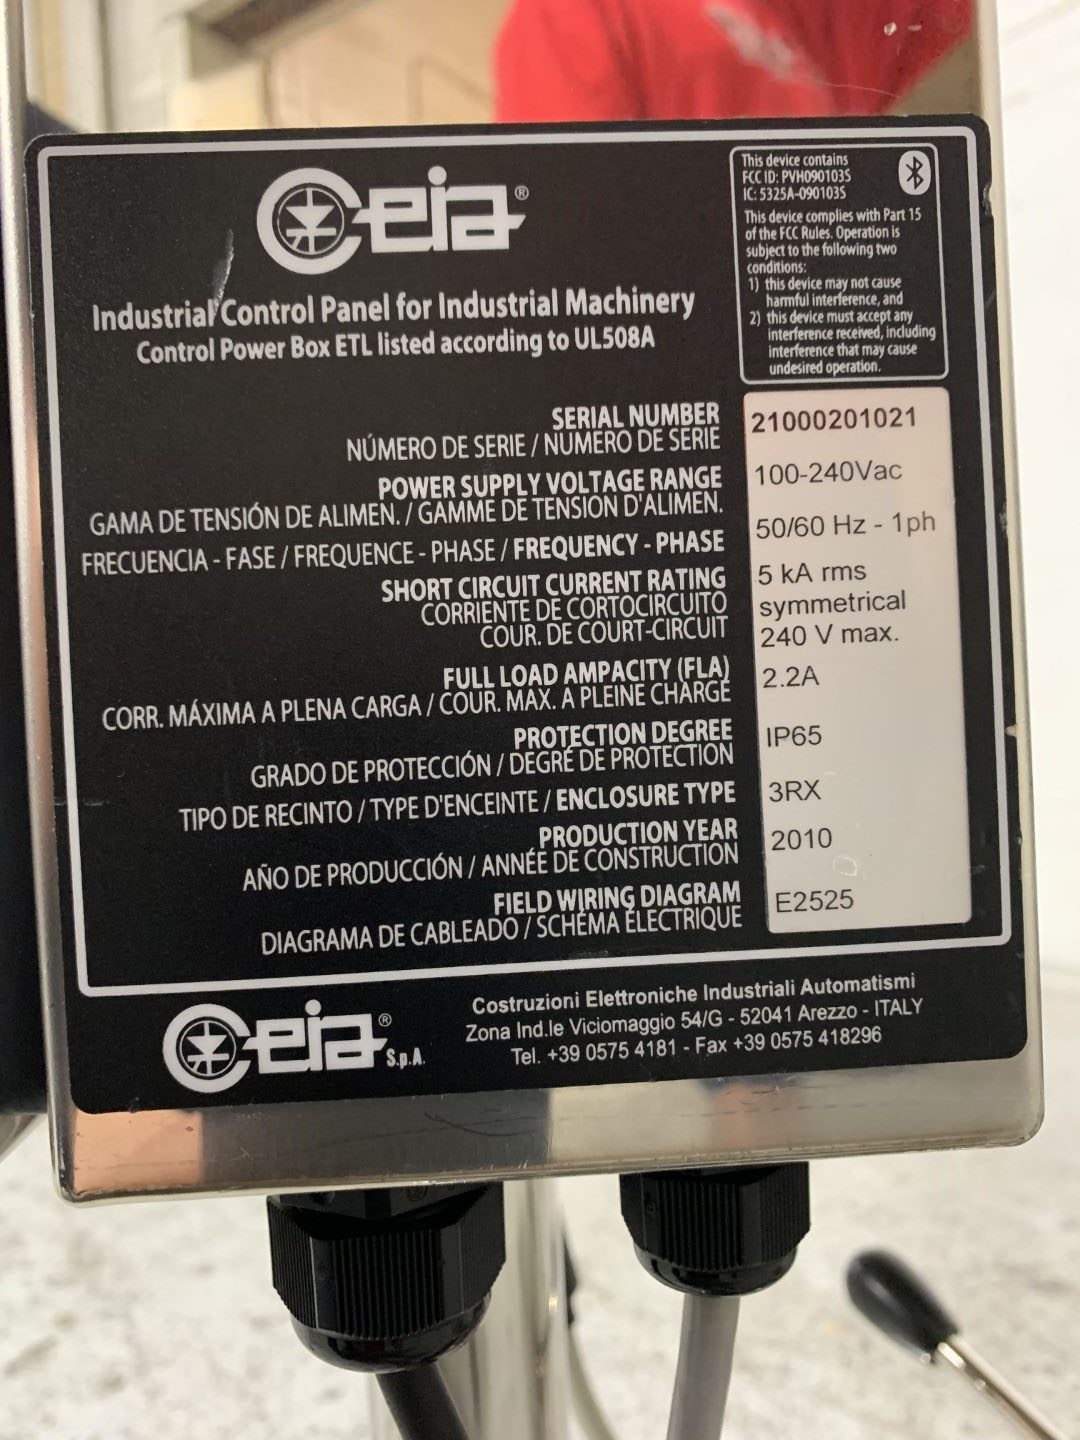 CEIA Metal Detector, Model THS/PH21N